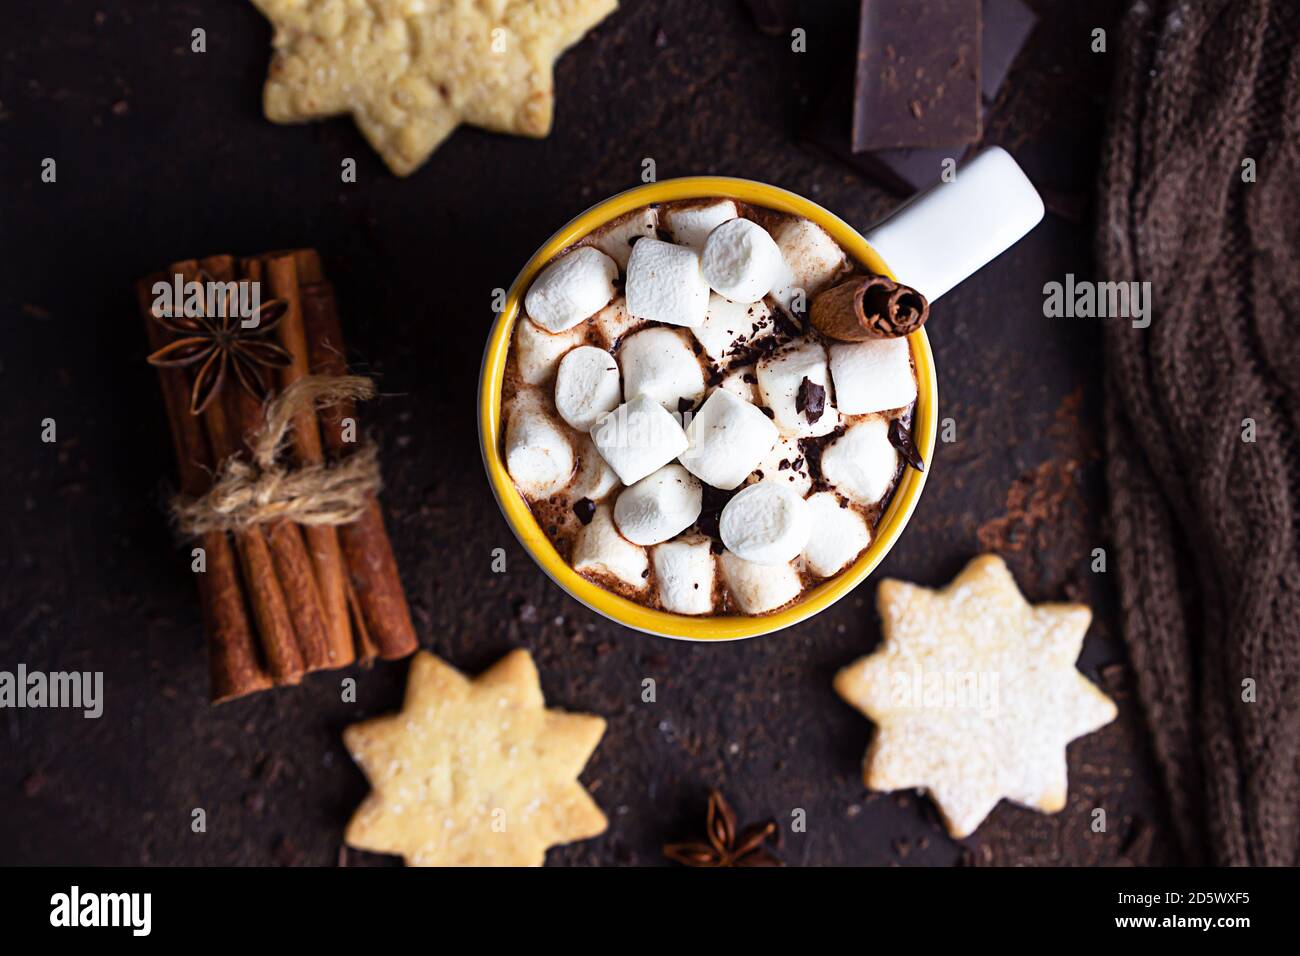 Zwei weiße Keramikbecher mit heißem Kakao oder Schokolade mit Marshmallow und Anis, Zimt und Bitterschokolade auf dunkelbraunem Steingrund. Stockfoto